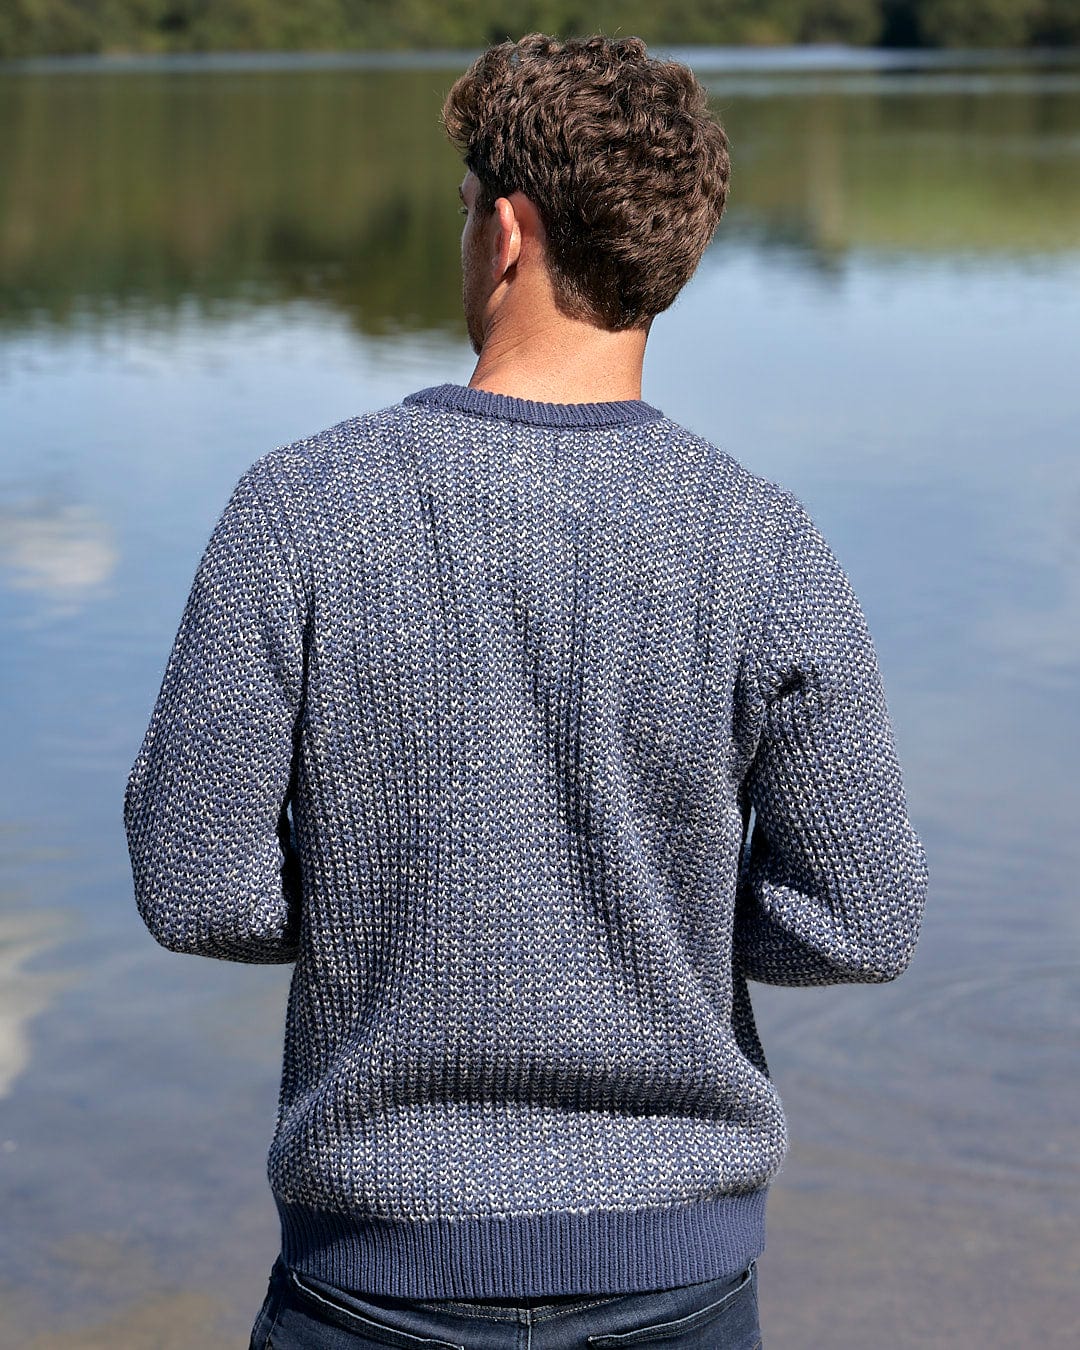 A man is standing by a body of water wearing a Saltrock Arlen - Mens Crew Knit - Dark Blue sweater.